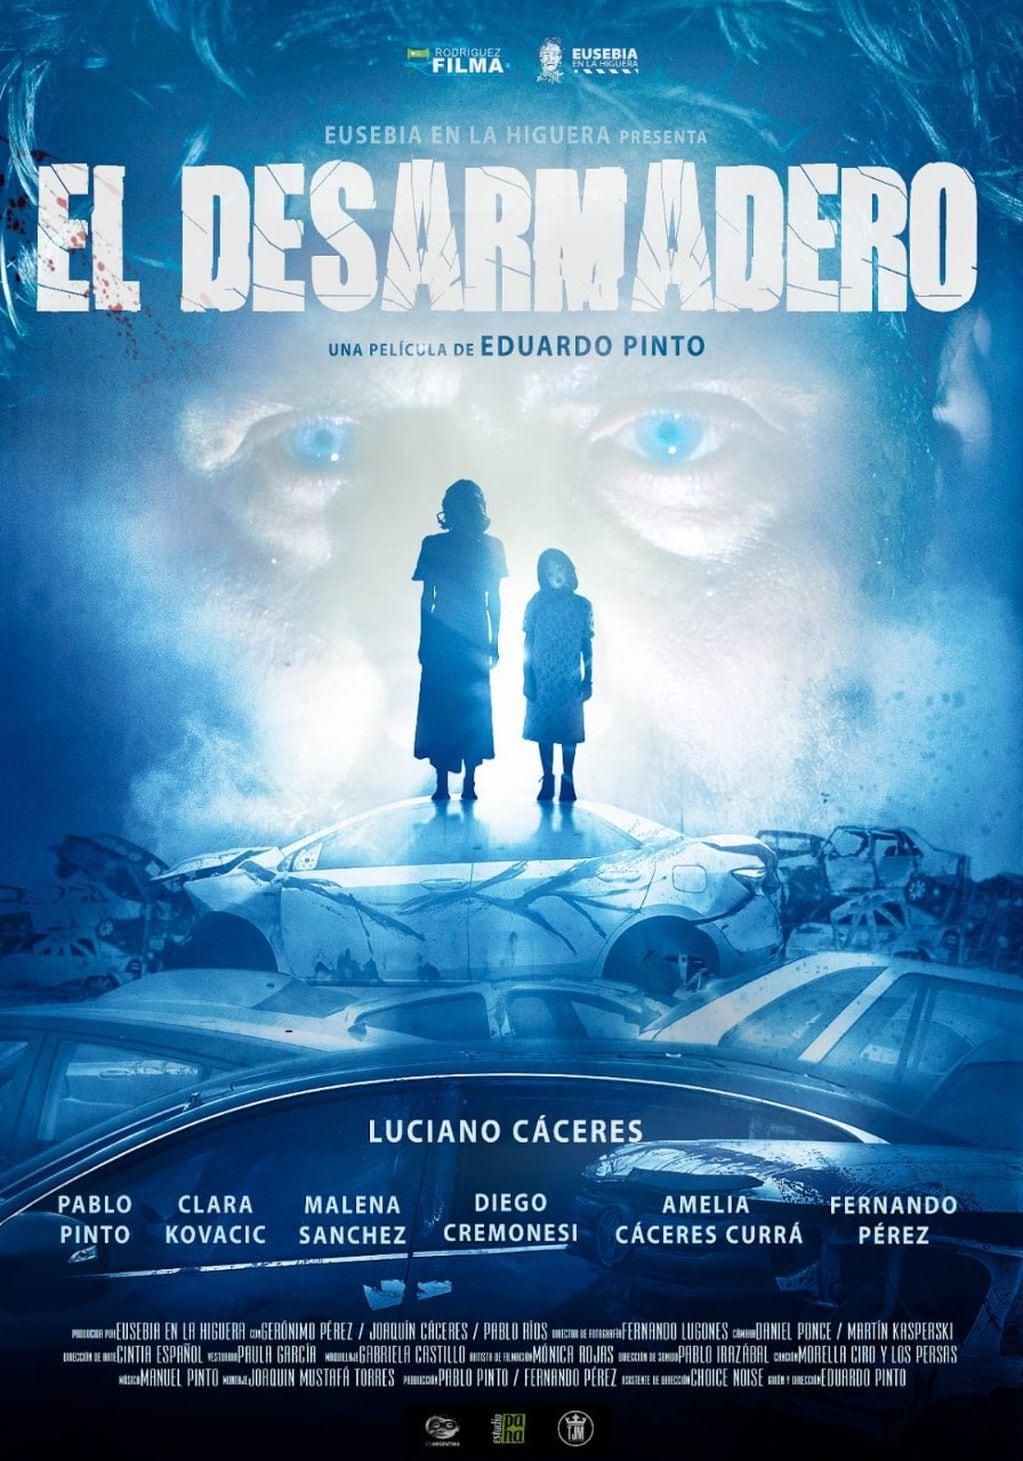 El film dirigido por Eduardo Pinto será exhibido este sábado 20 en el Festival Internacional de Cine.